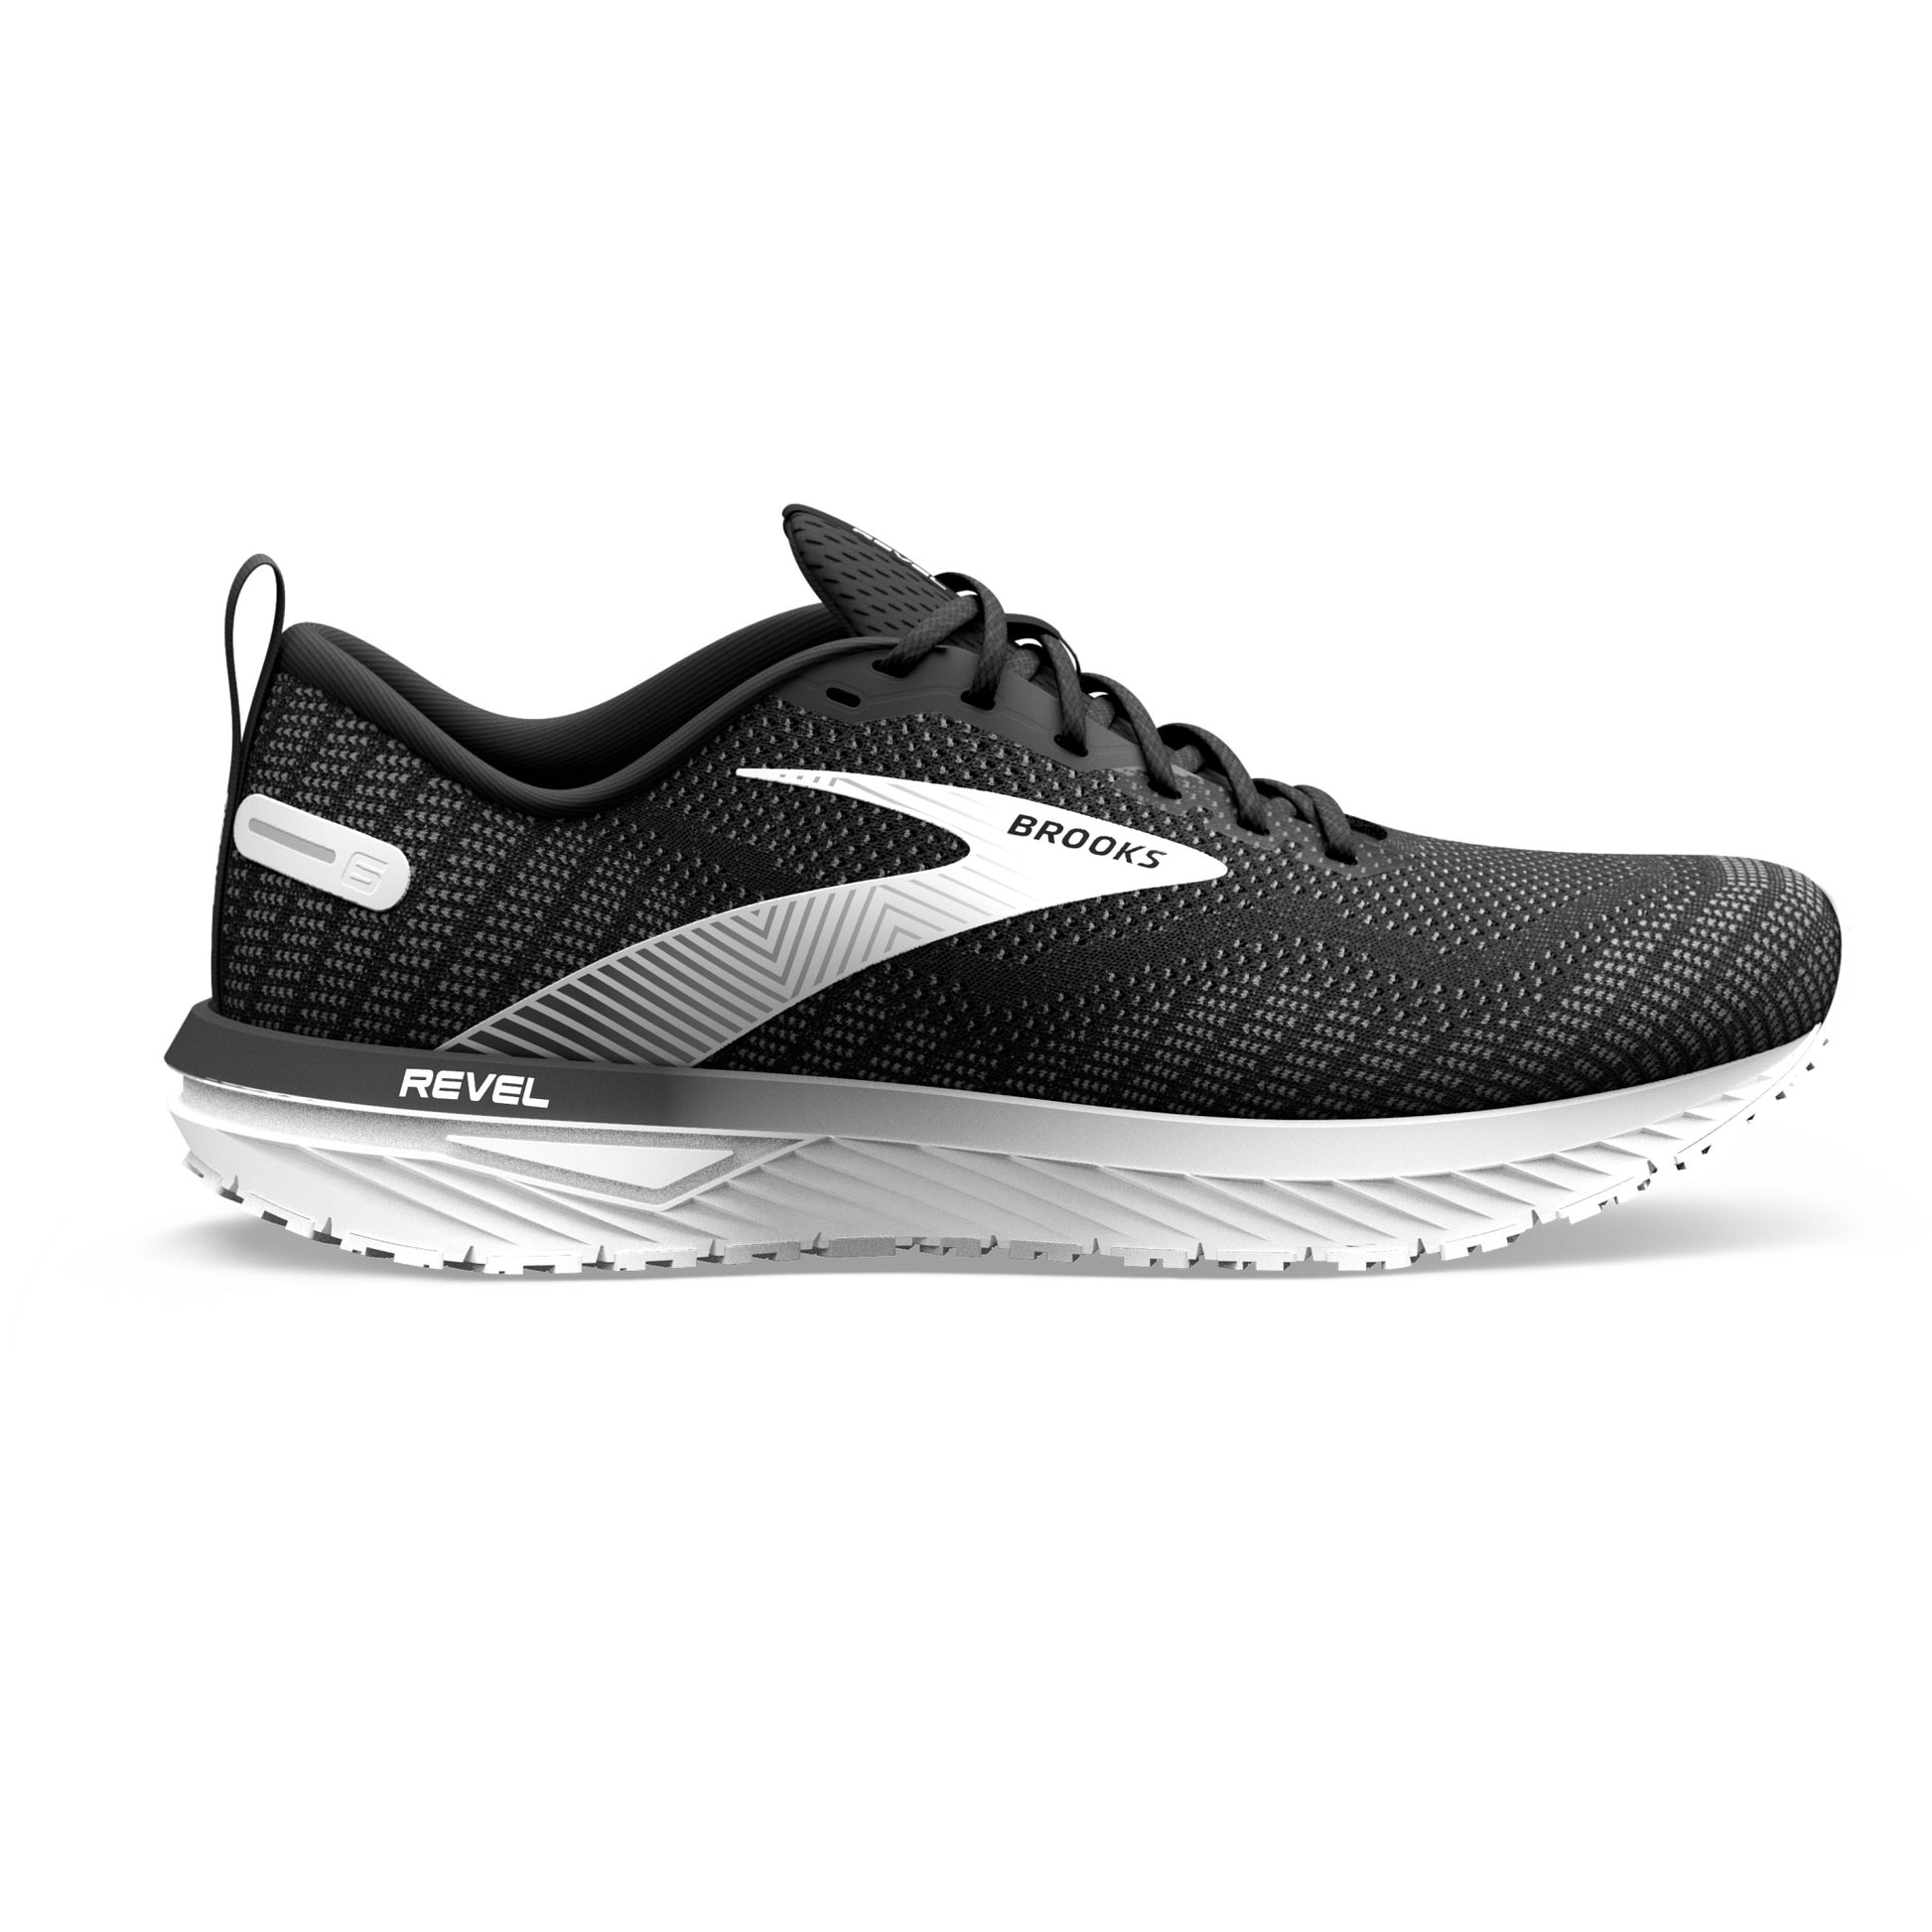 Brooks Revel 6 women's neutral running shoe black and white